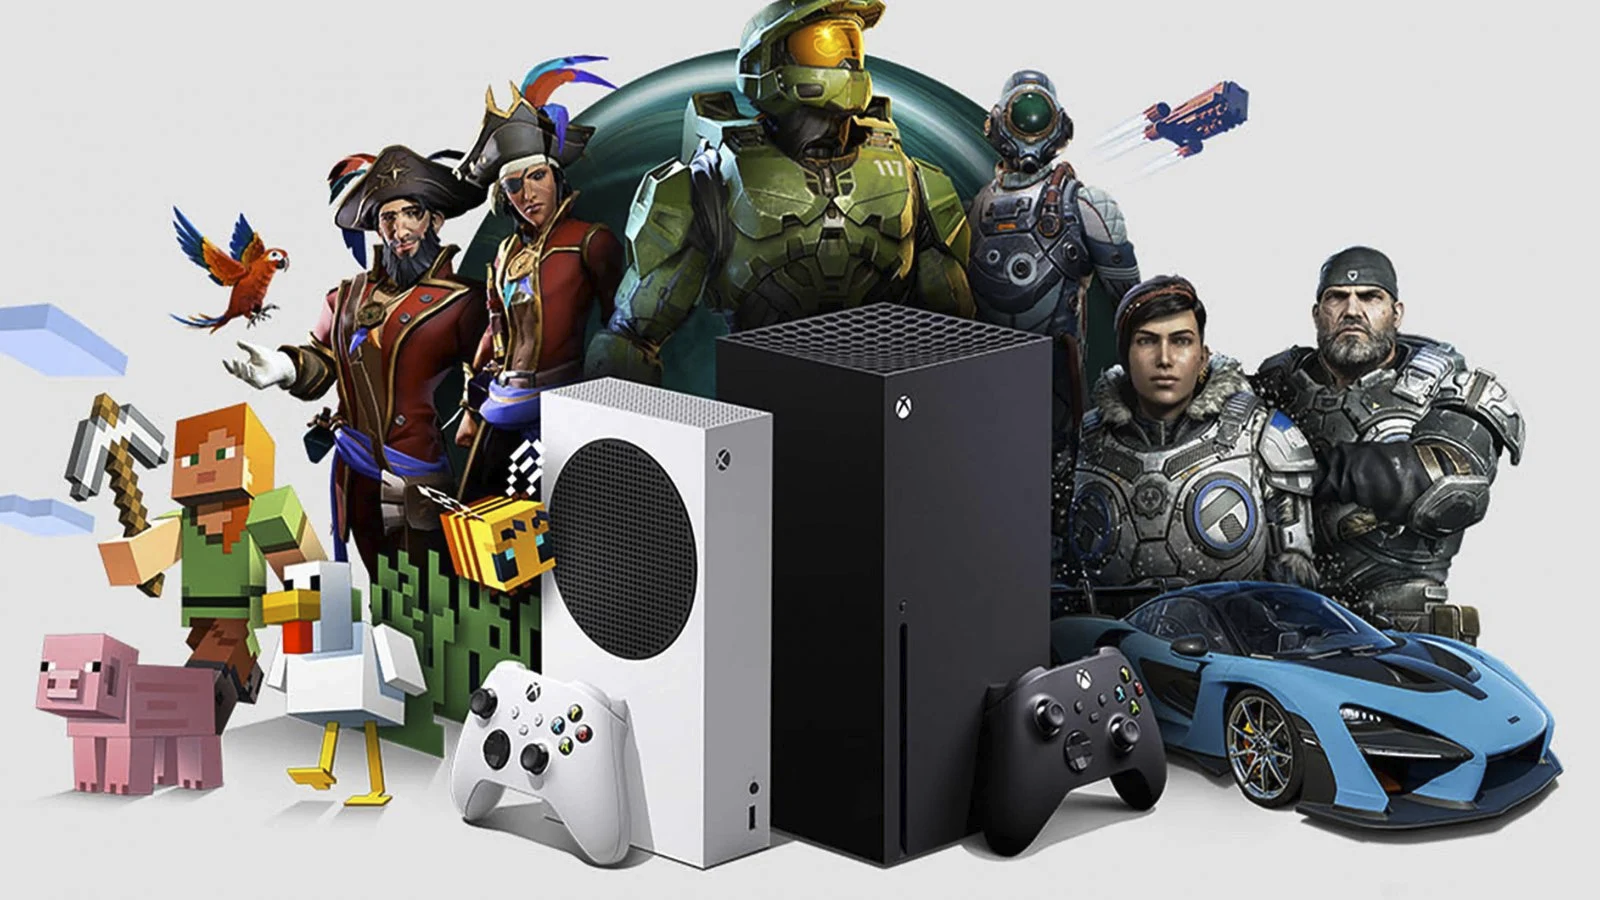 Подробнее о статье Microsoft и Xbox растут в плане контента, но падают в продажах в четвертом квартале